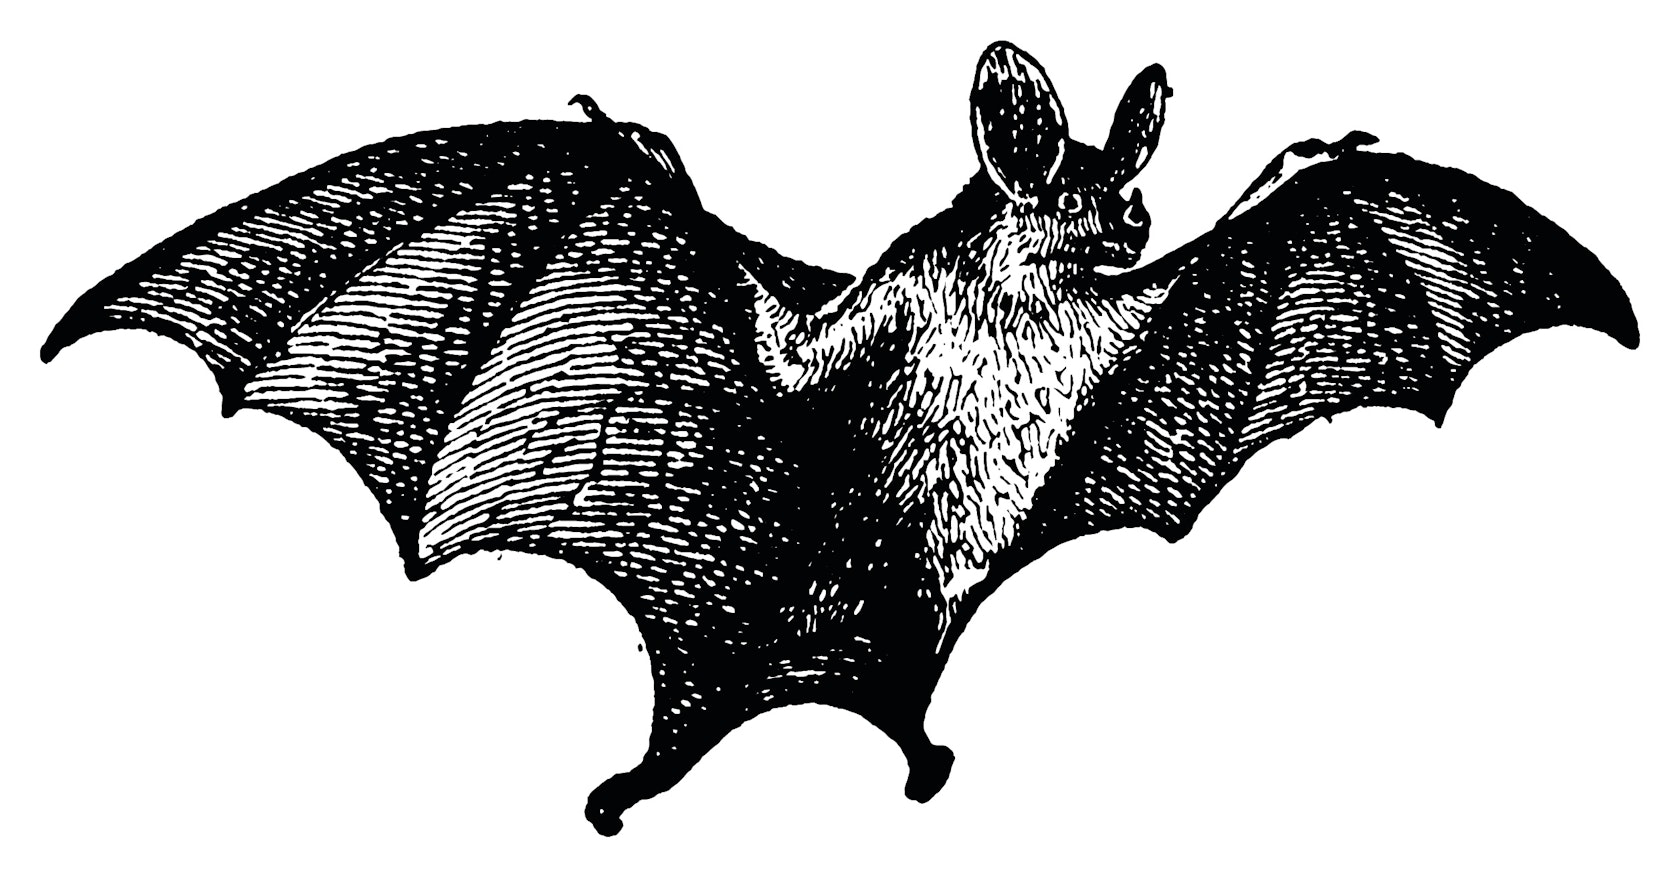 Vampire Bat vintage illustration.